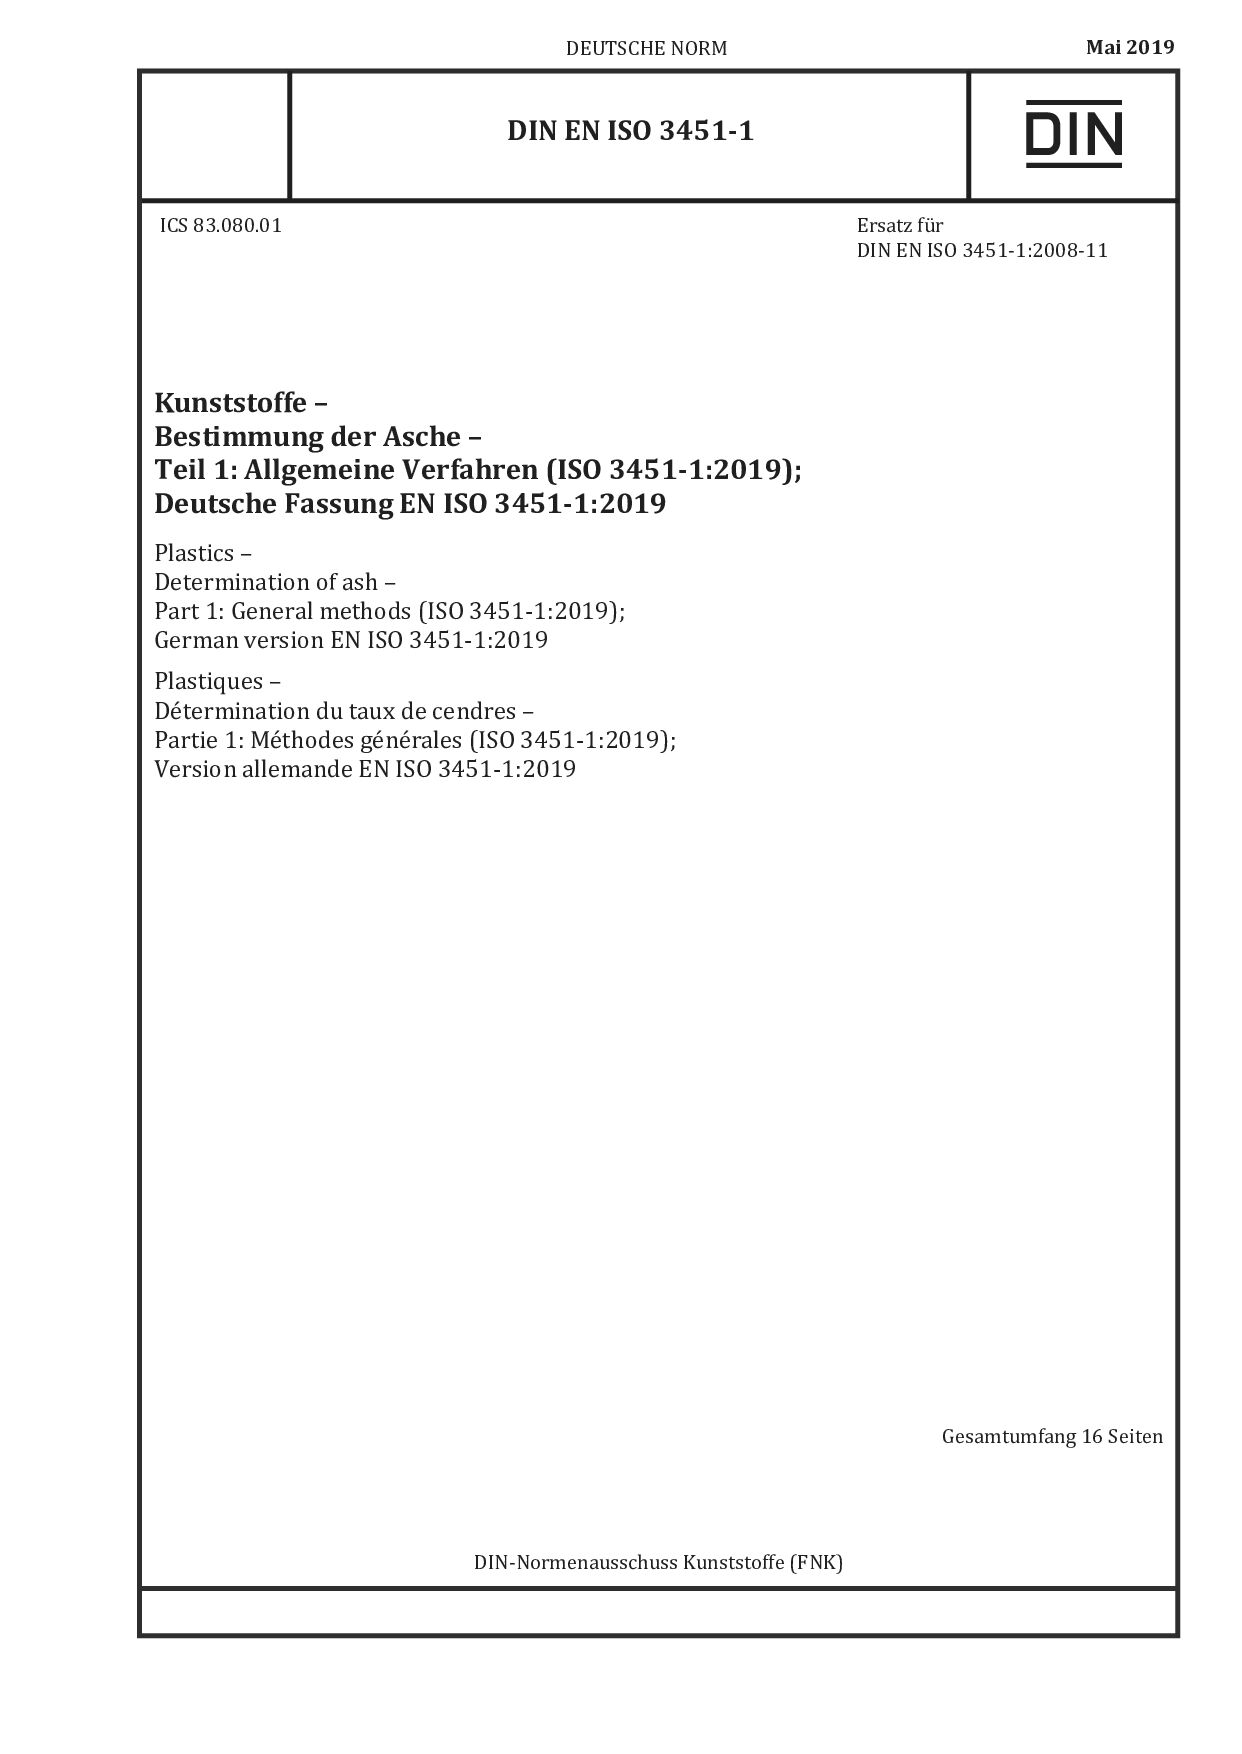 DIN EN ISO 3451-1:2019封面图